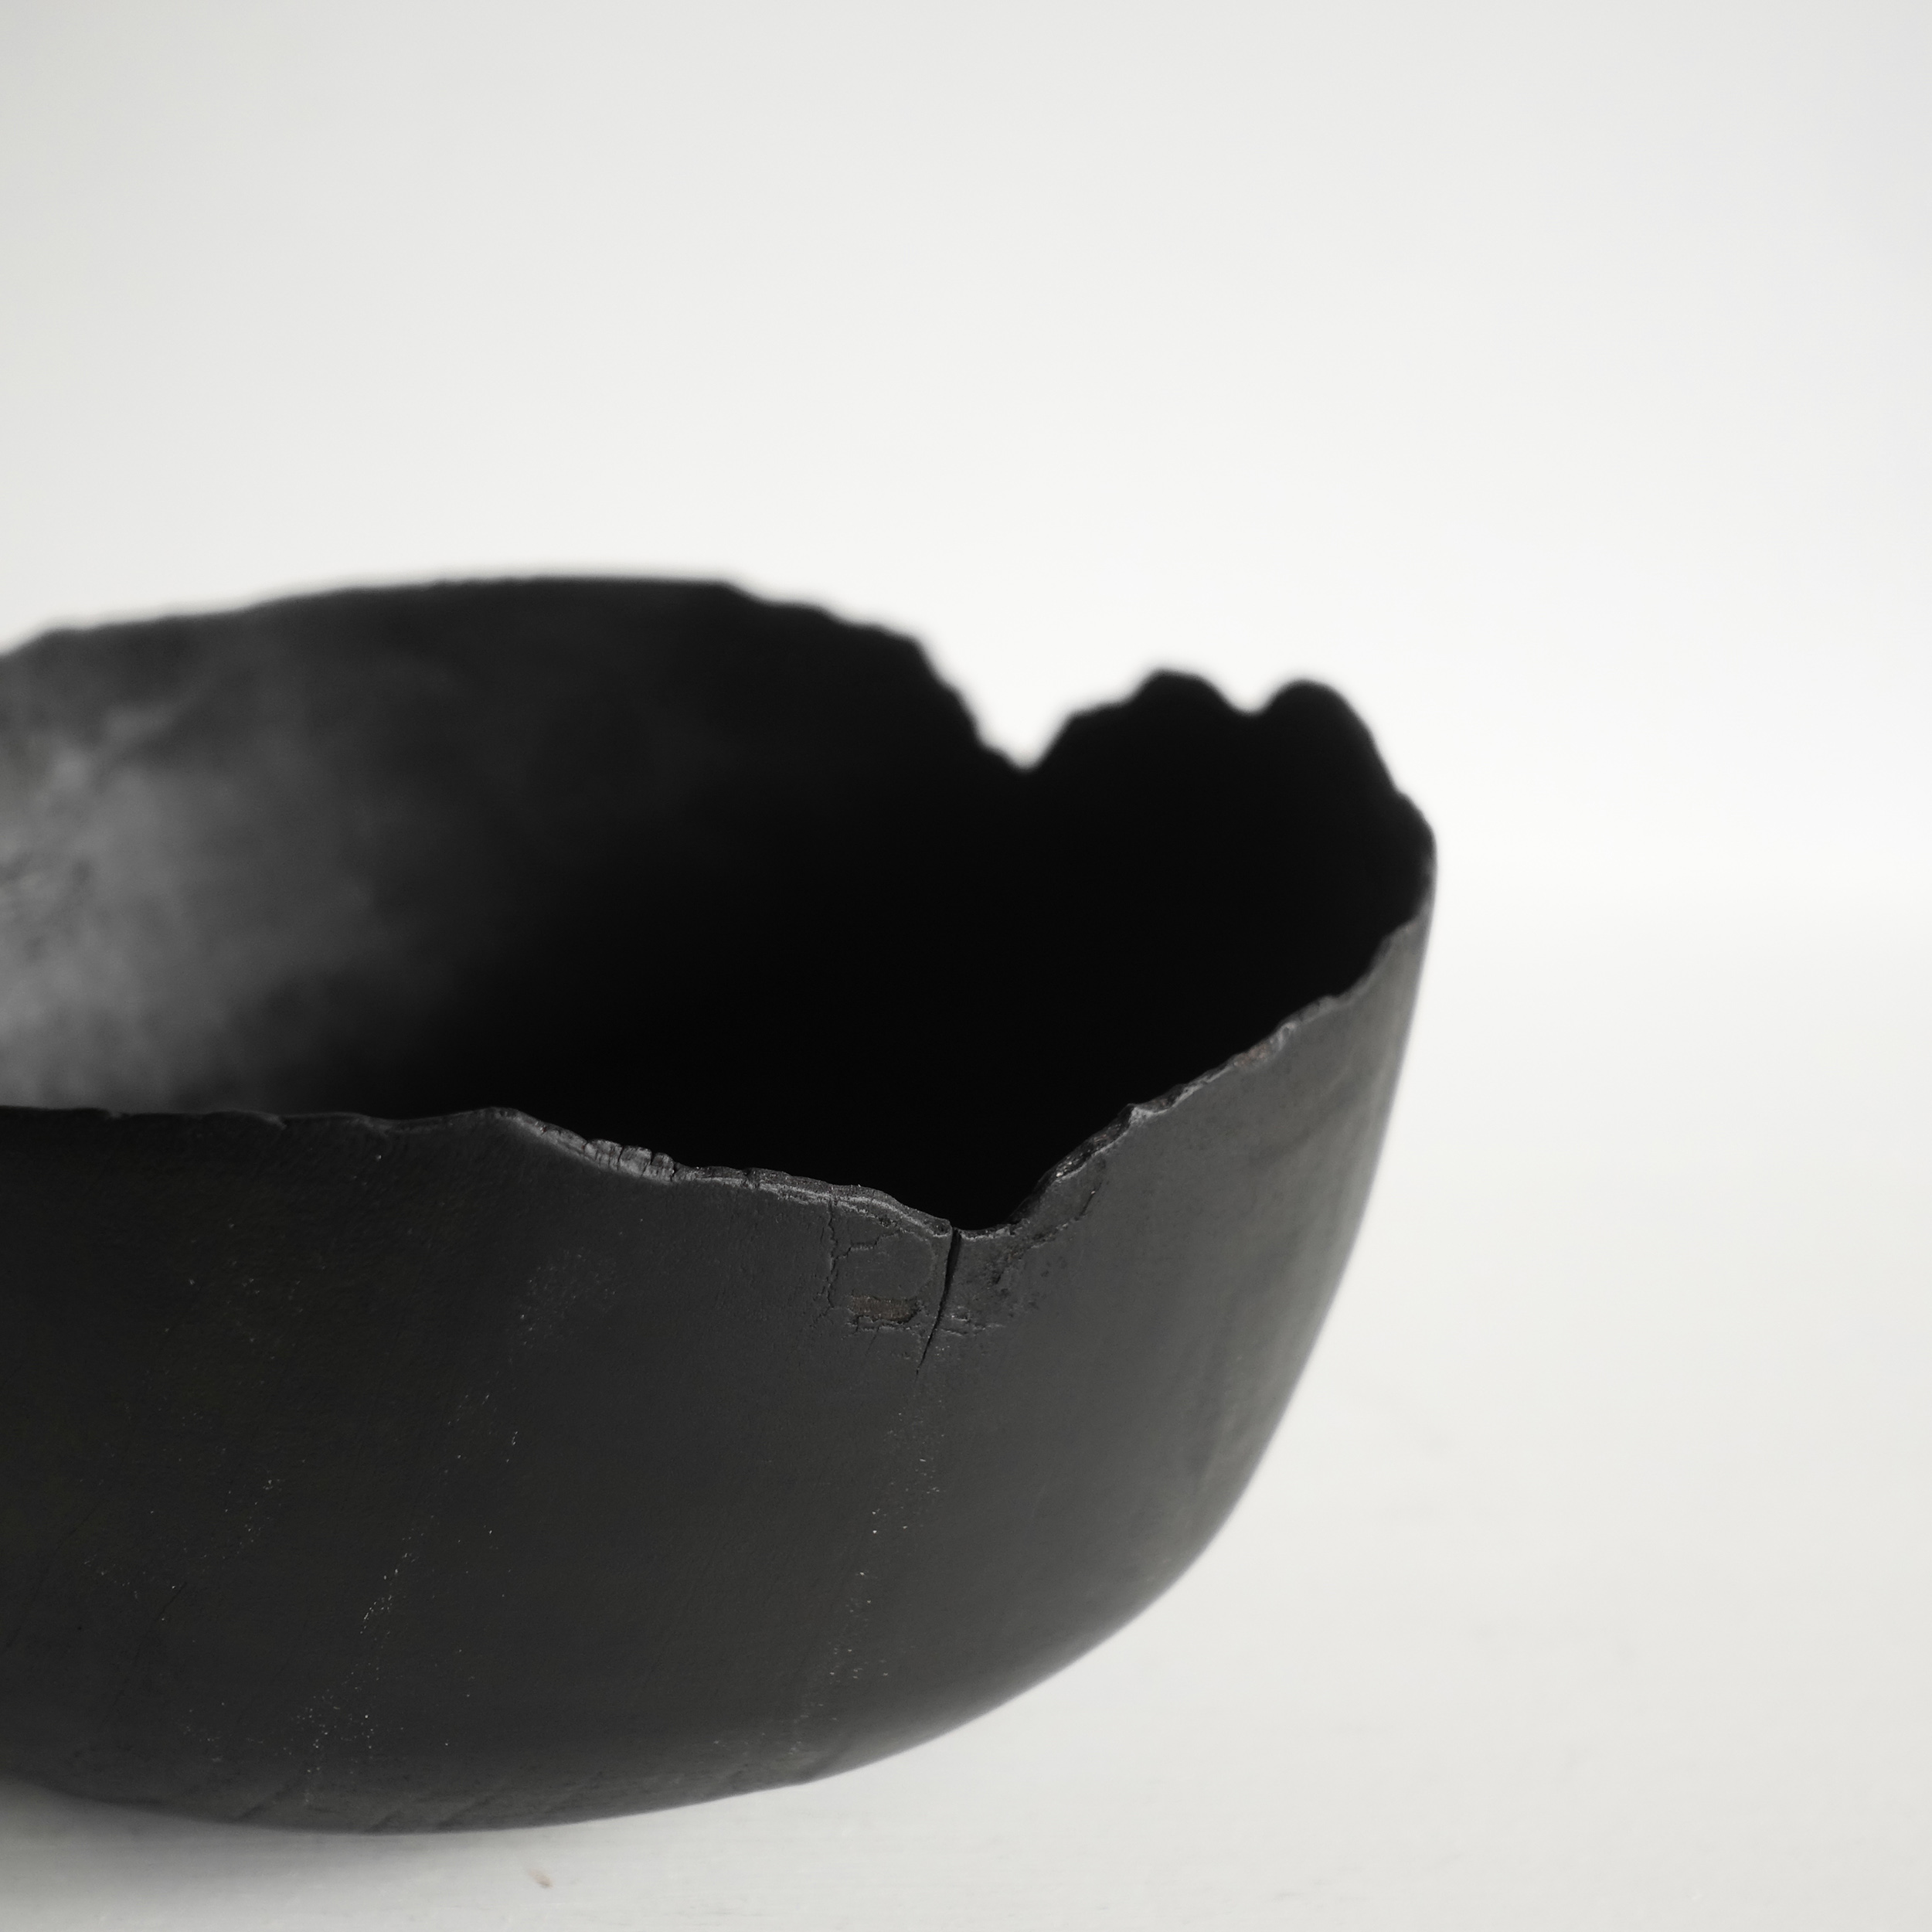 Thin black bowl 3